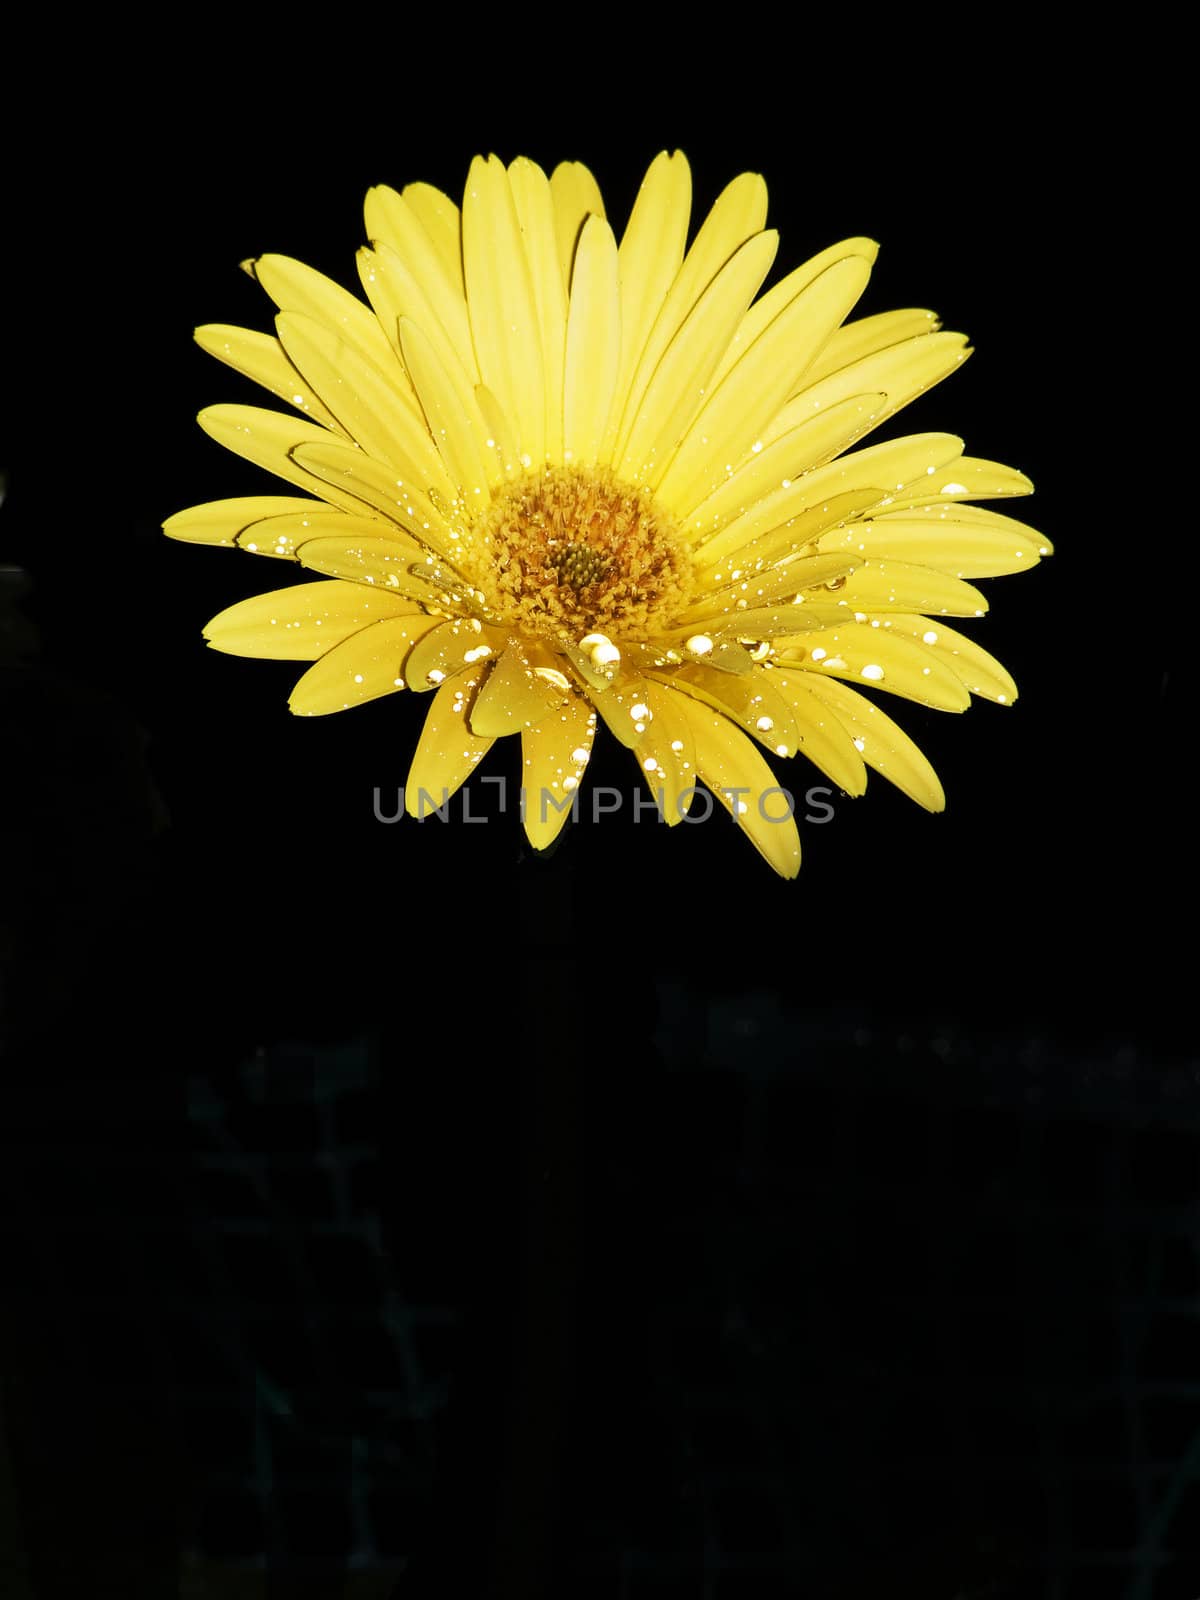 gazania flower isolated on black background